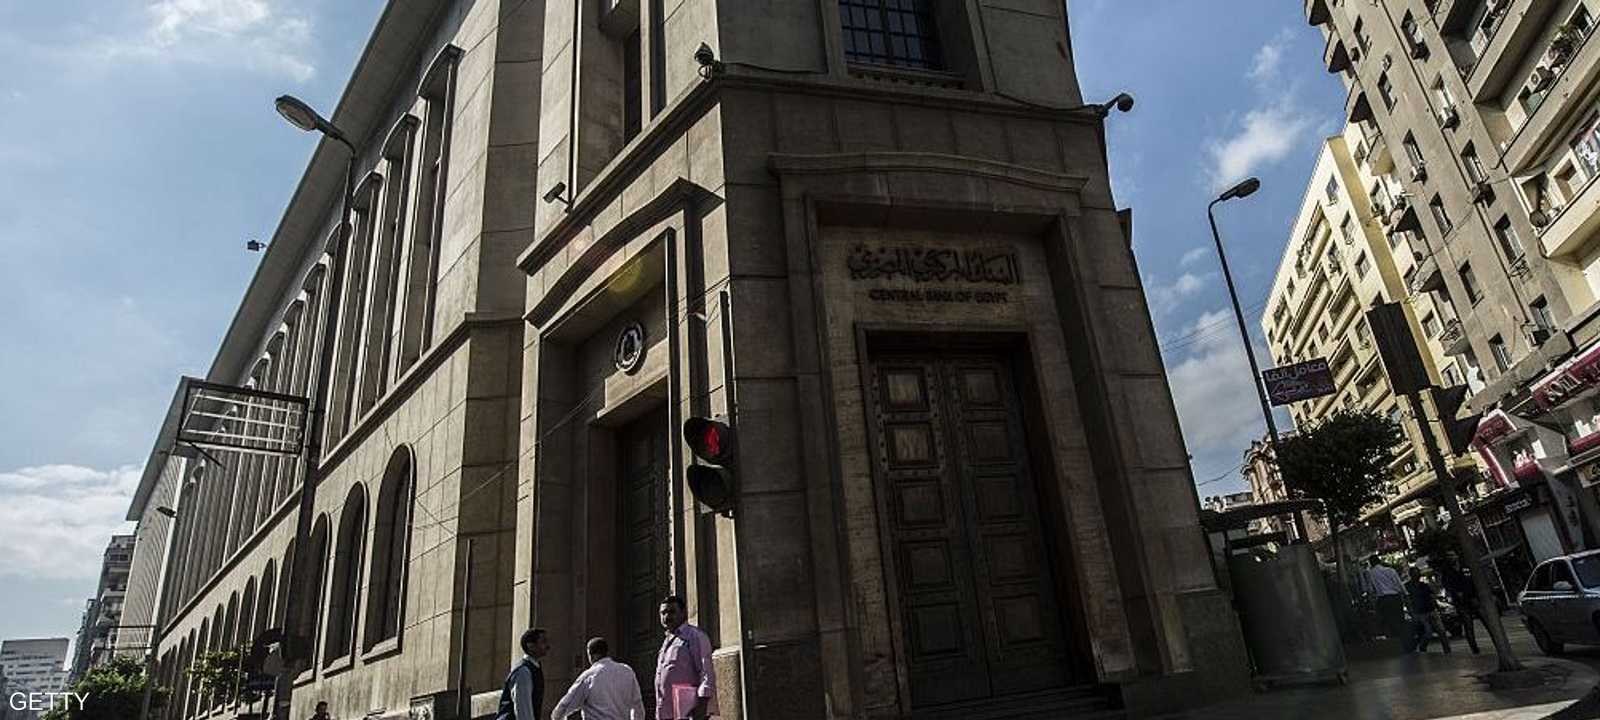 قال البنك المركزي المصري إن التضخم تحت السيطرة